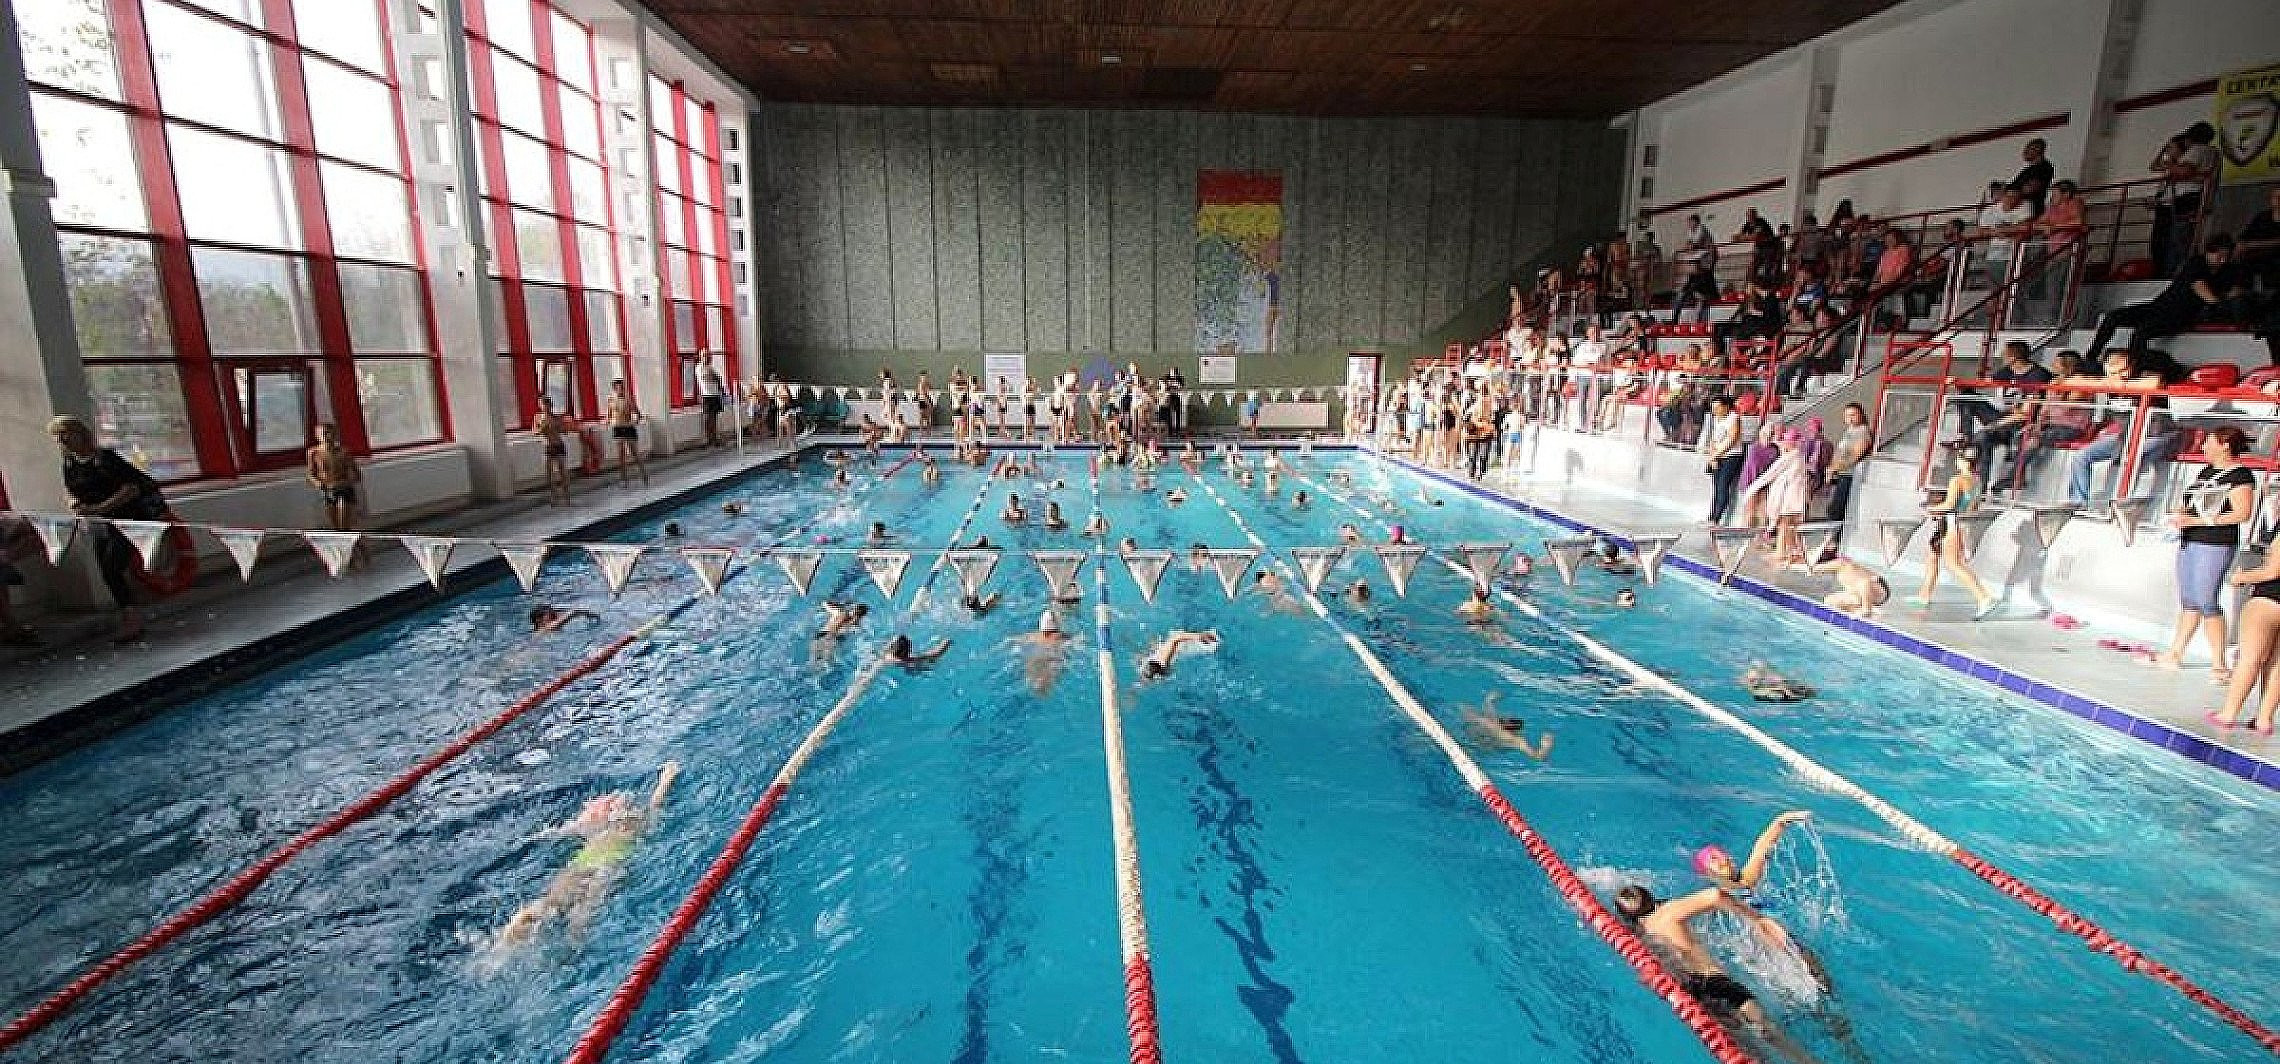 Inowrocław - W ten weekend pływalnie będą zamknięte